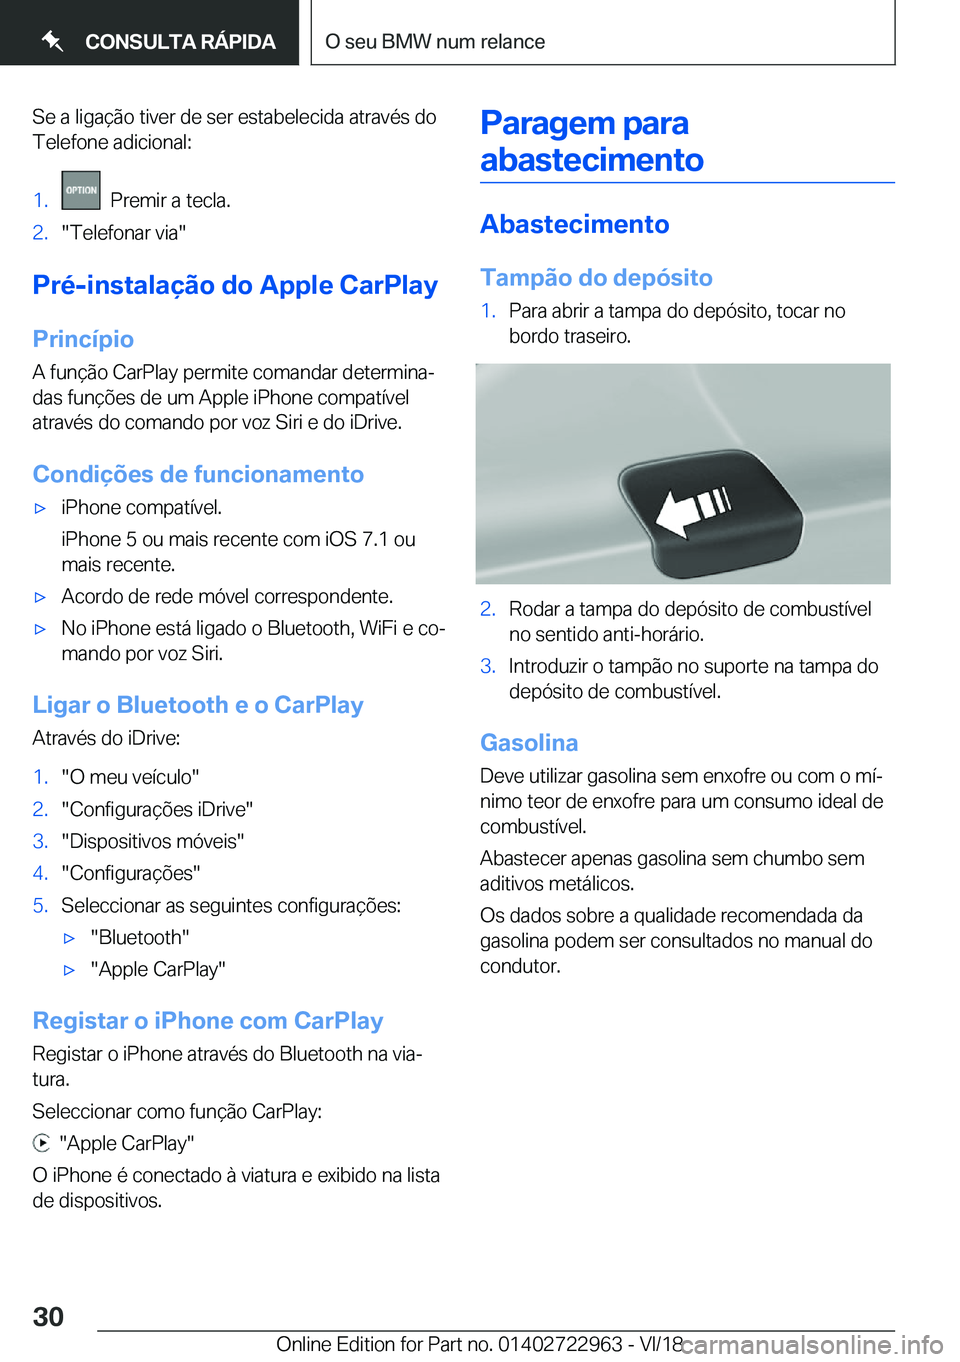 BMW M4 2019  Manual do condutor (in Portuguese) �S�e��a��l�i�g�a�